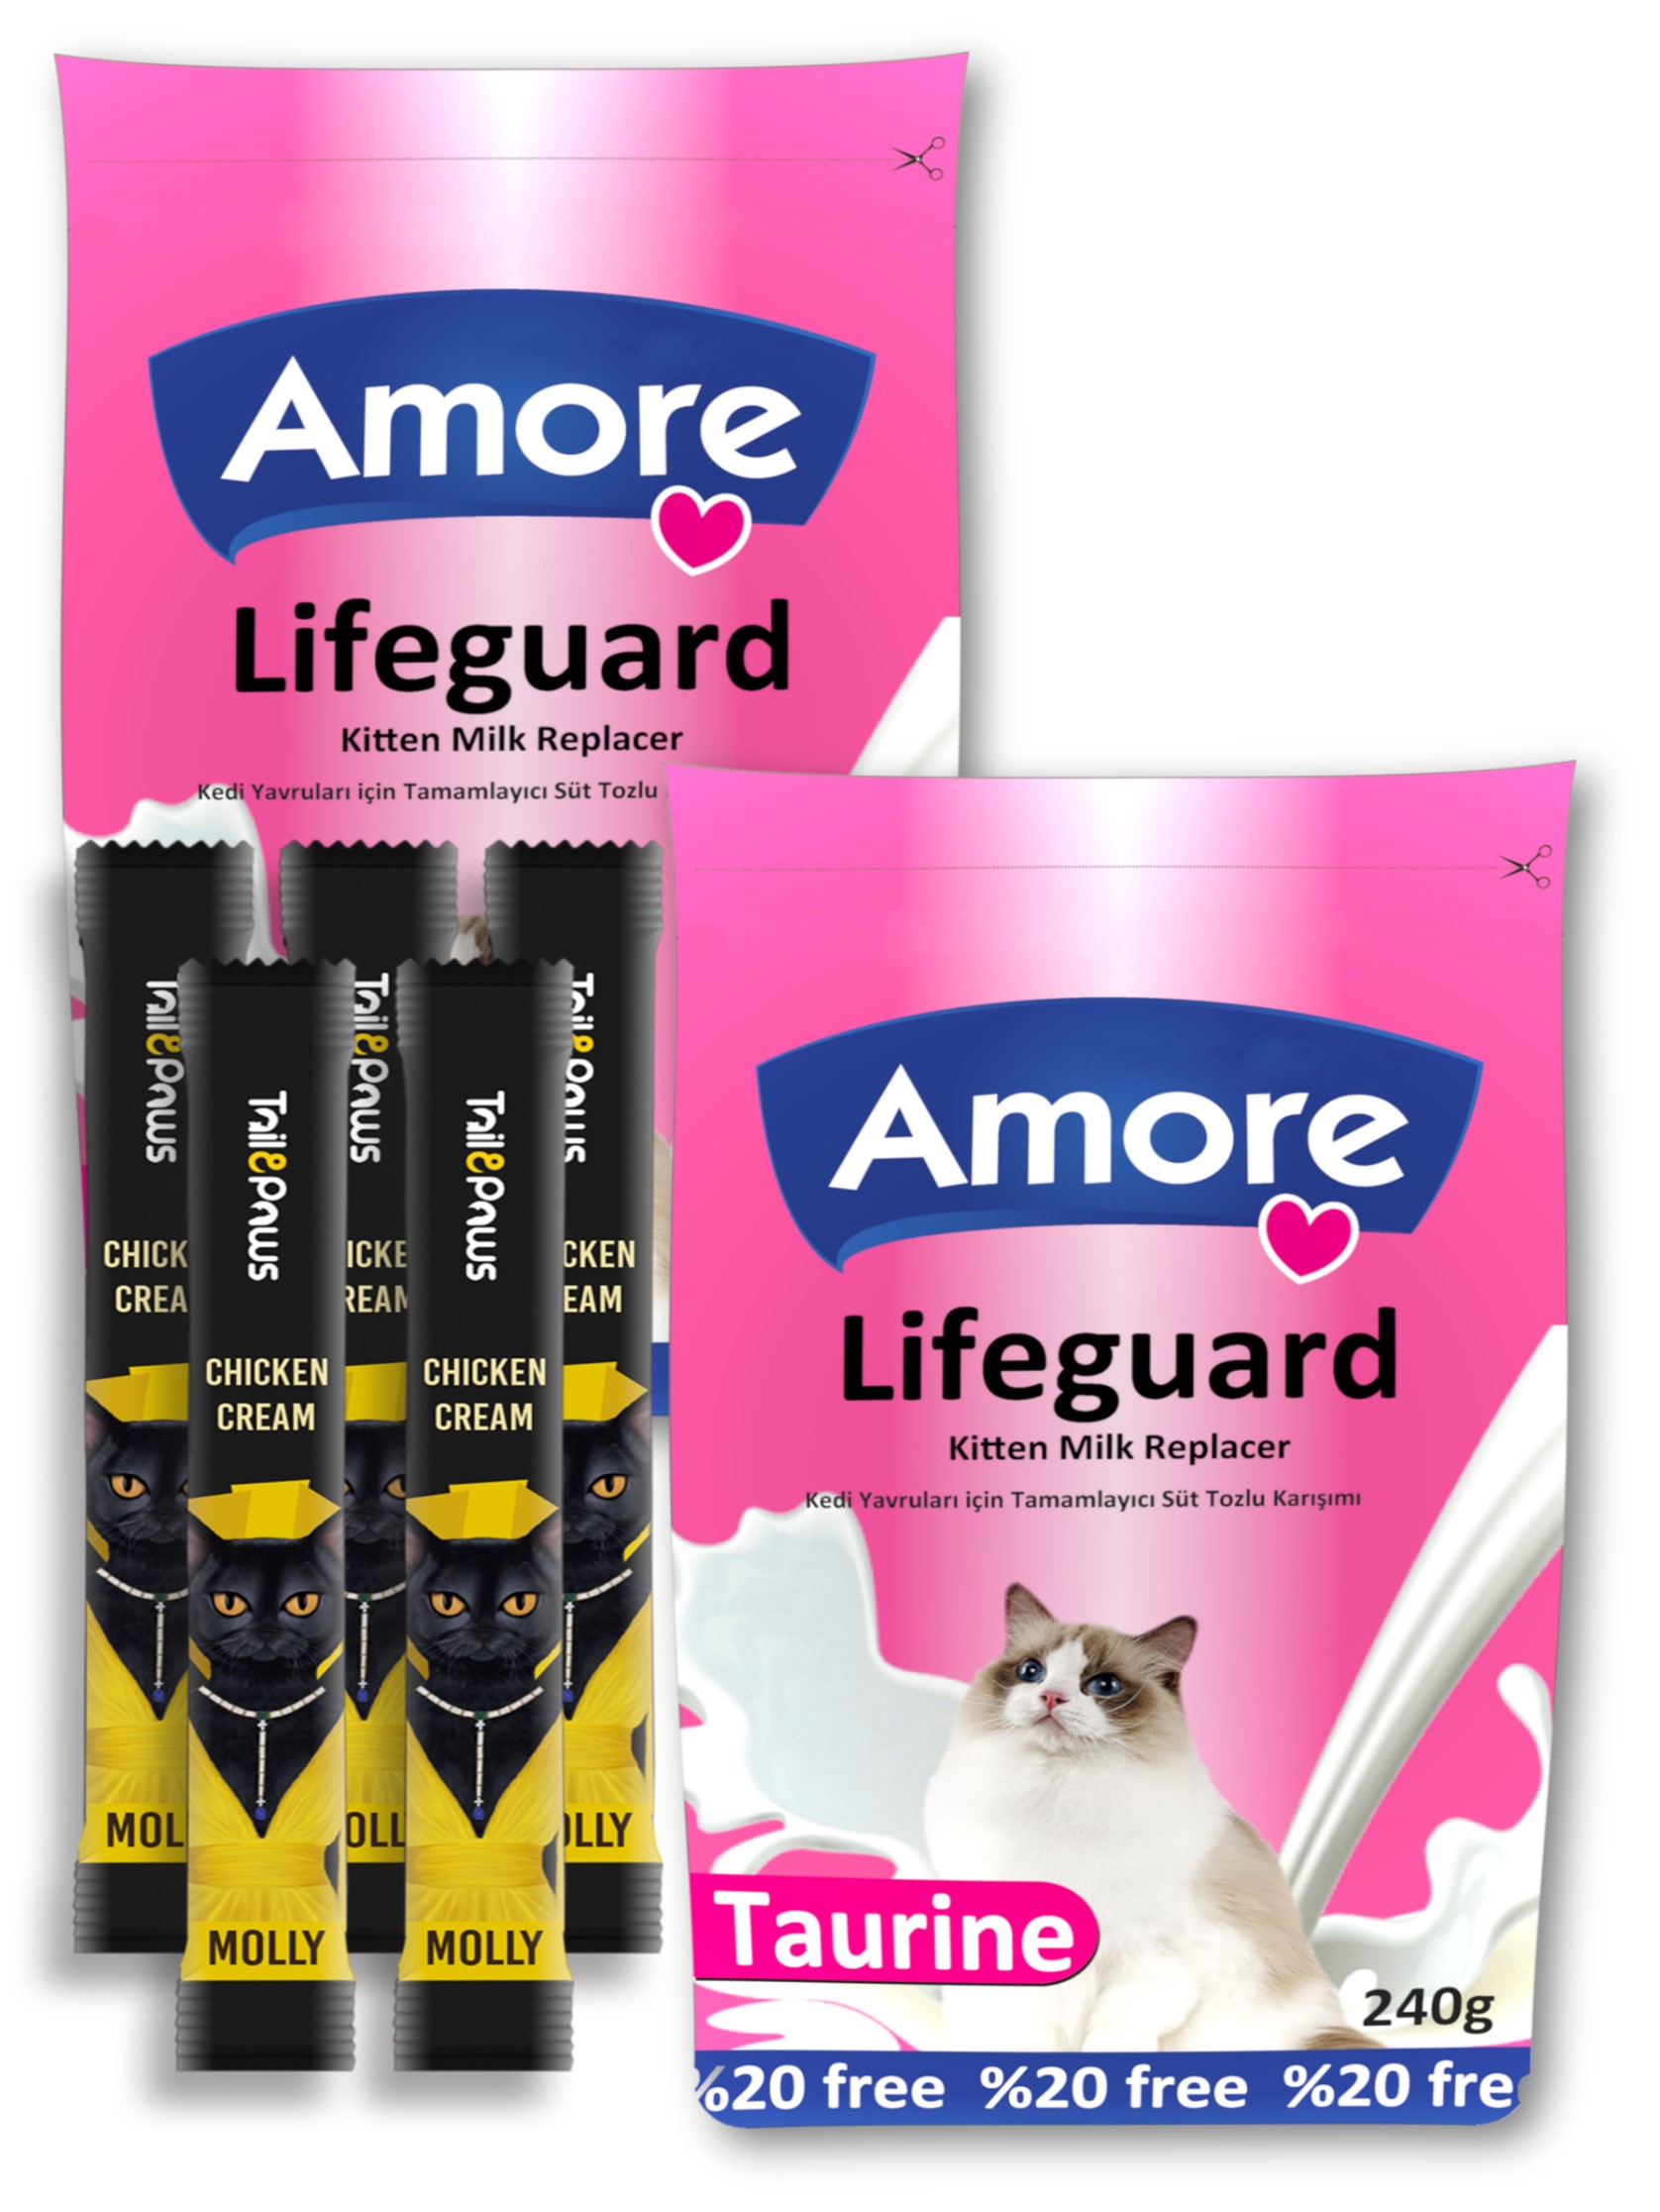 Amore Kedi Süt Tozu LifeGuard 2x240gr ve Molly Sıvı Kedi Ödülü 5x15gr Hediyesi